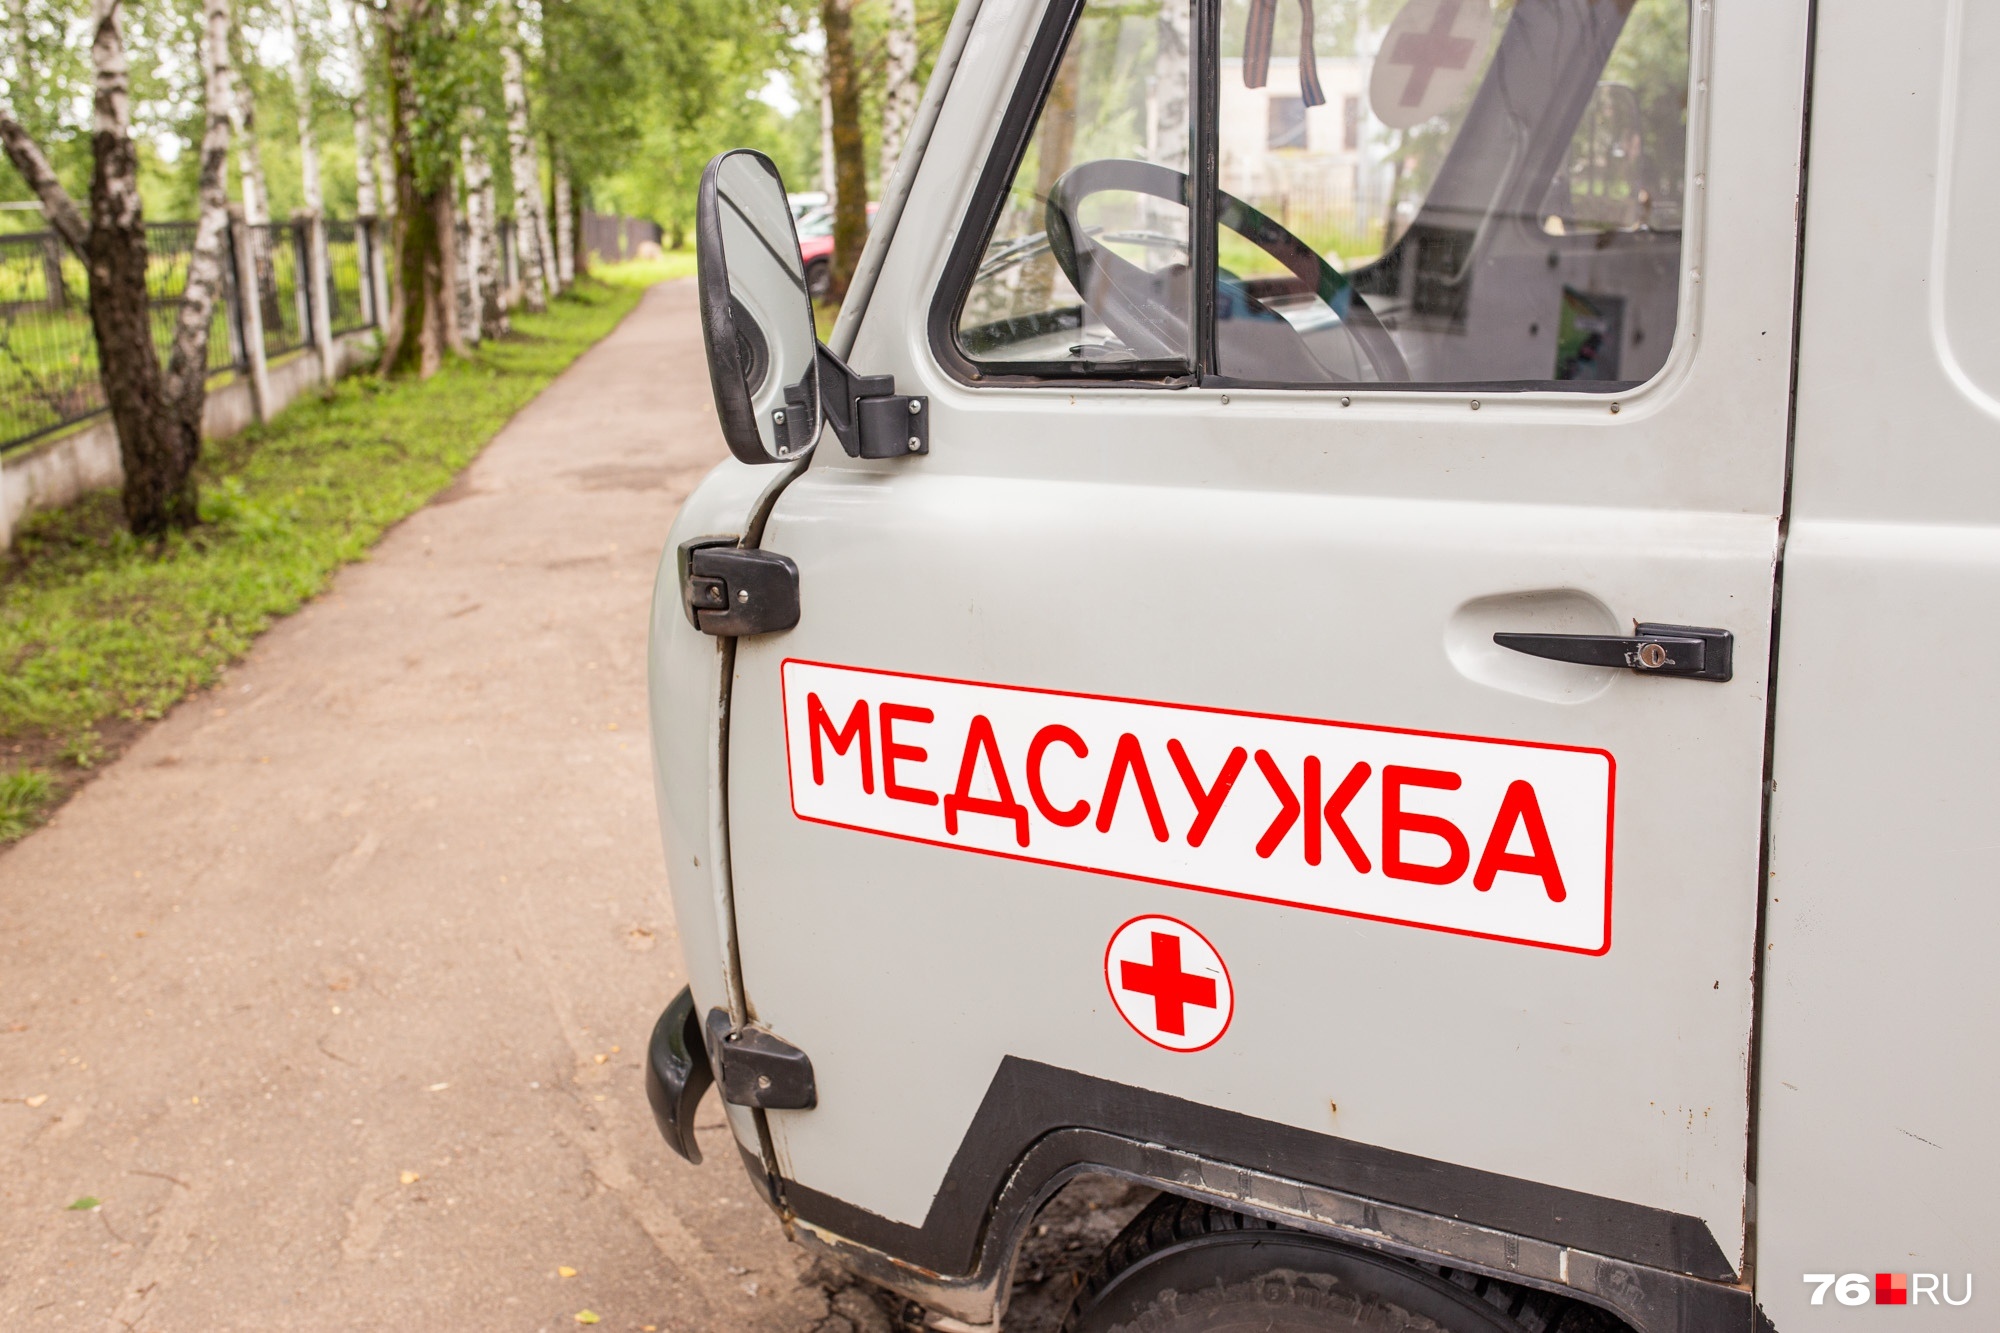 Это бесплатно: по Ярославской области запустили автомобиль с самыми важными врачами